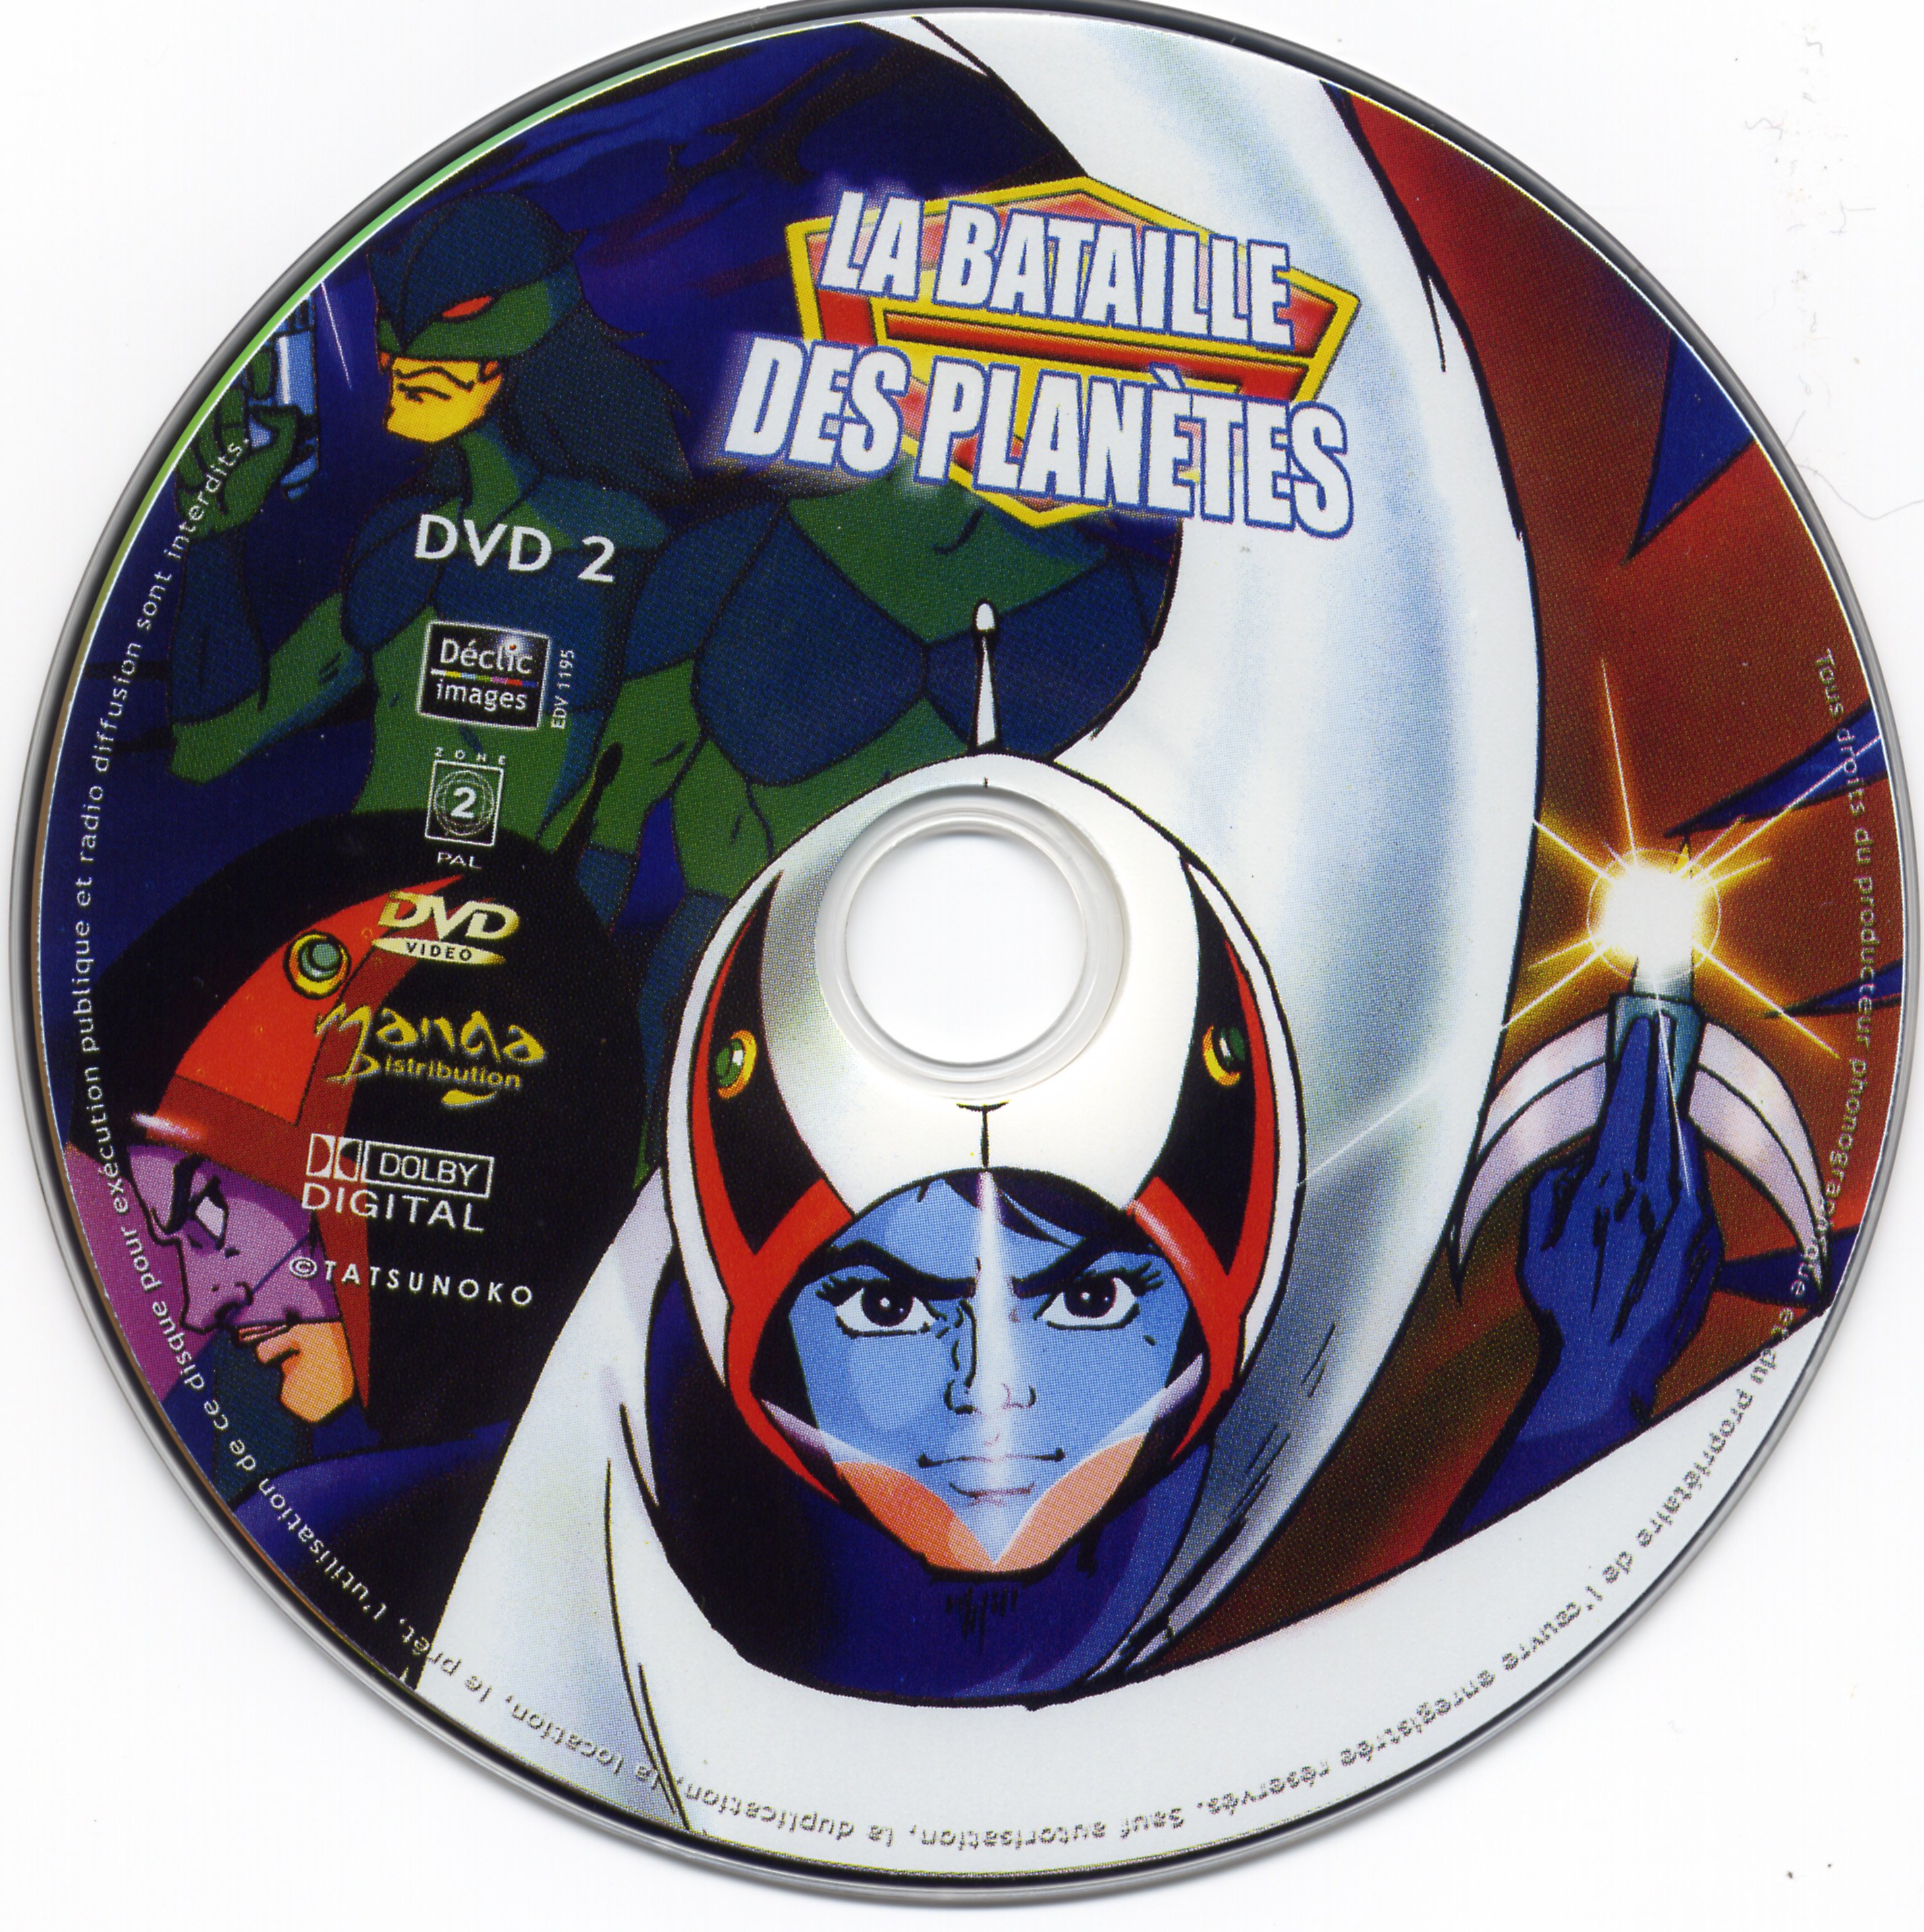 La bataille des planetes DVD 02